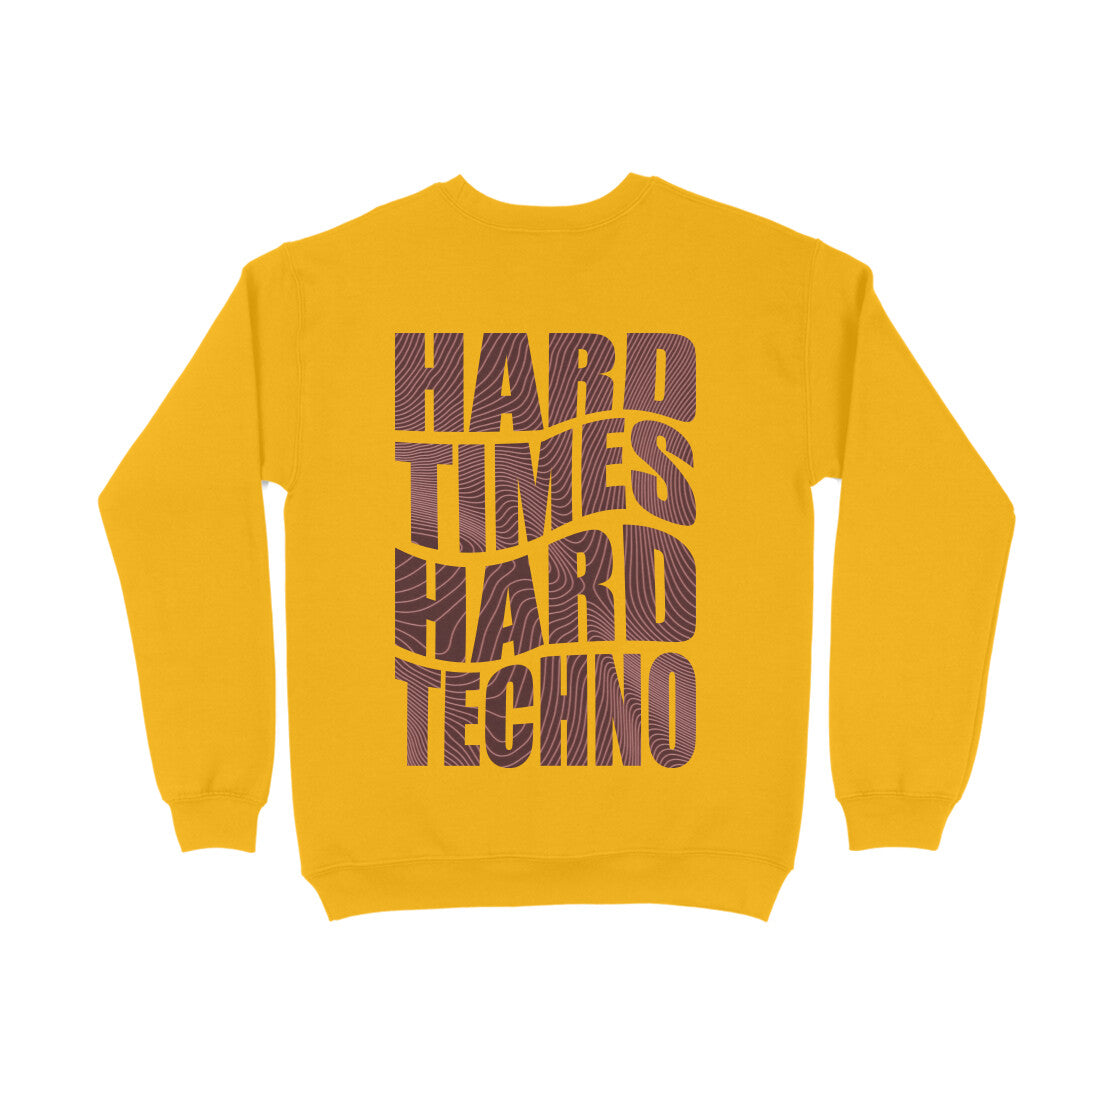 Hard Times Hard Techno